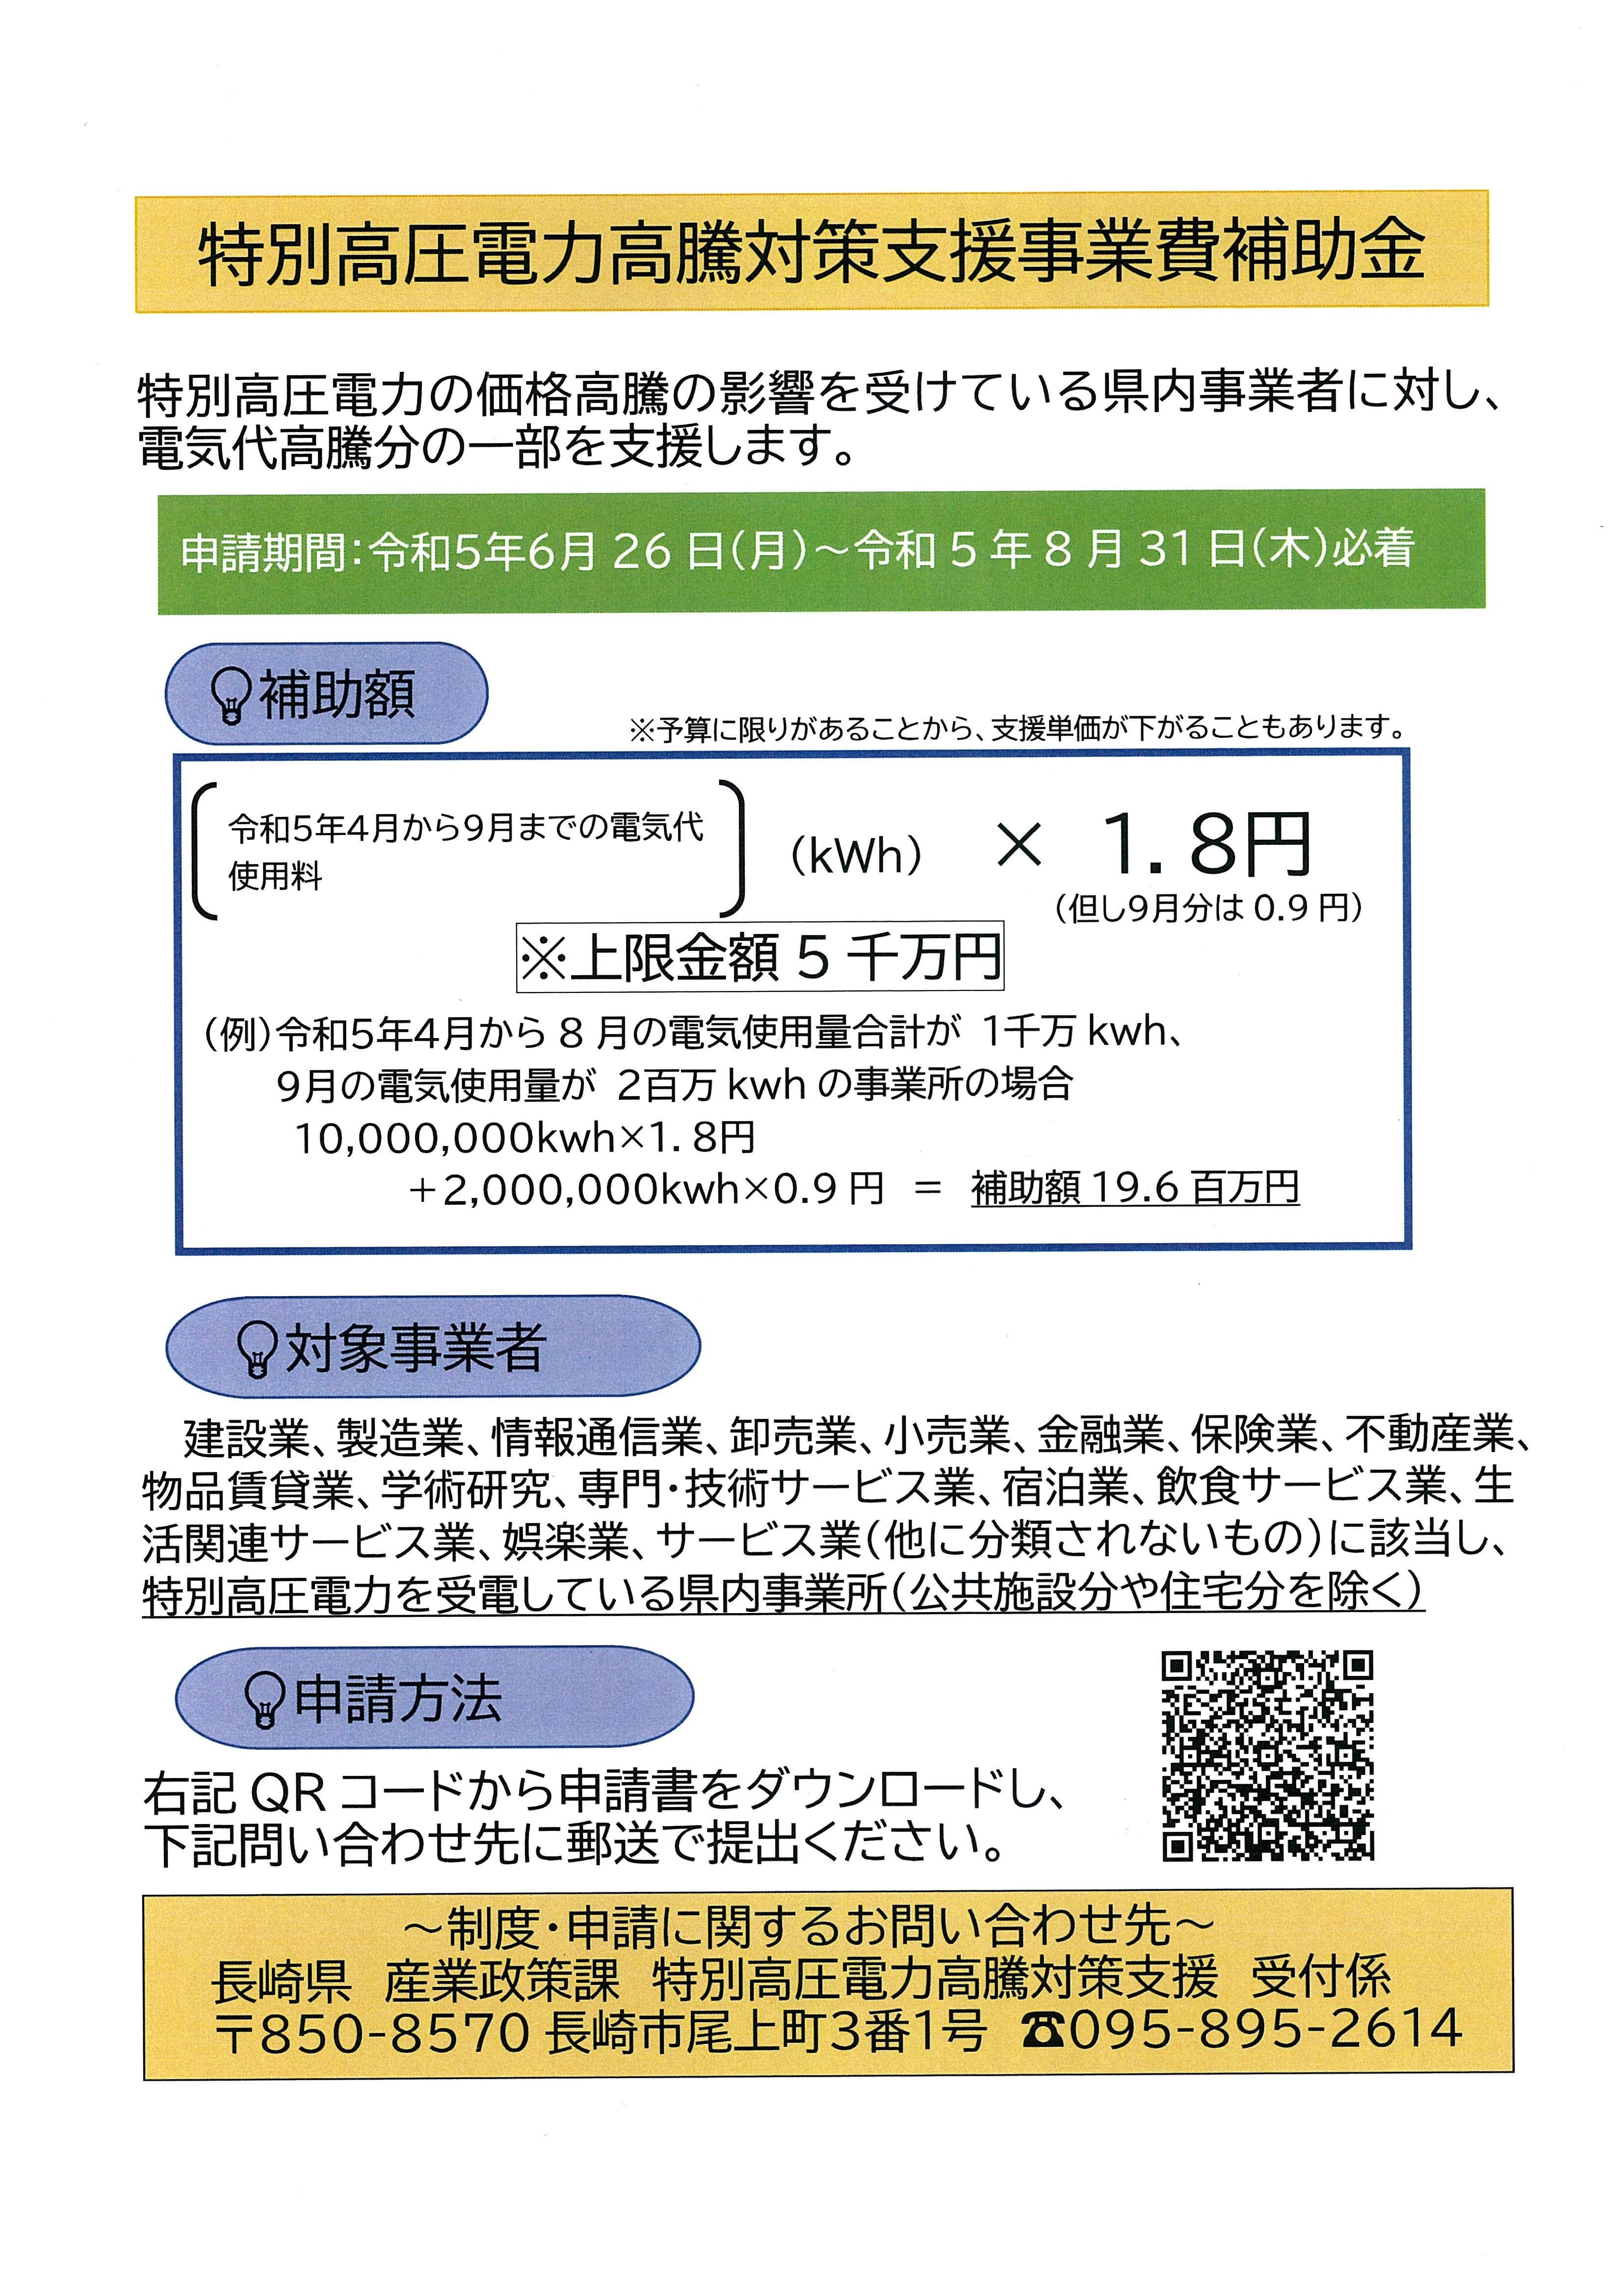 長崎県特別高圧電力高騰対策支援事業費補助金について